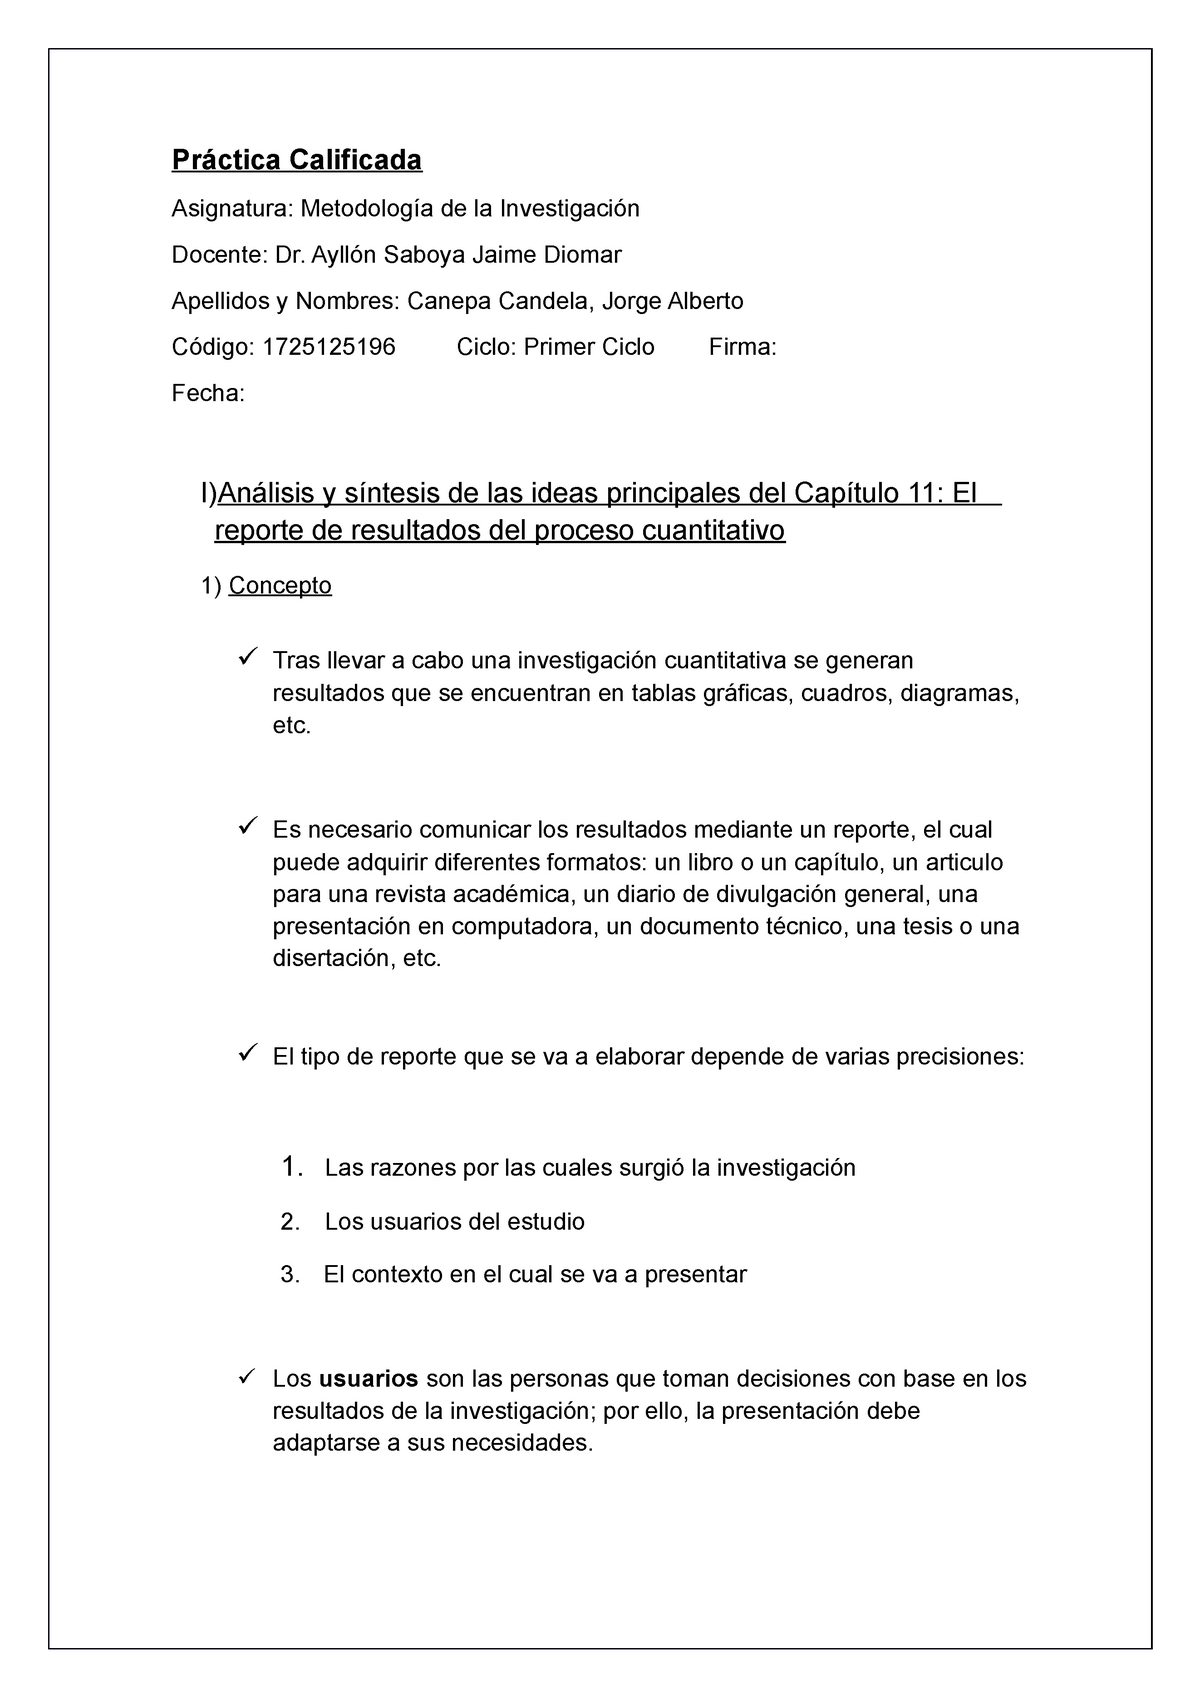 REPORTE DE LOS RESULTADOS EN UNA INVESTIGACIÓN DE ENFOQUE CUANTITATIVO -  Práctica Calificada - Studocu